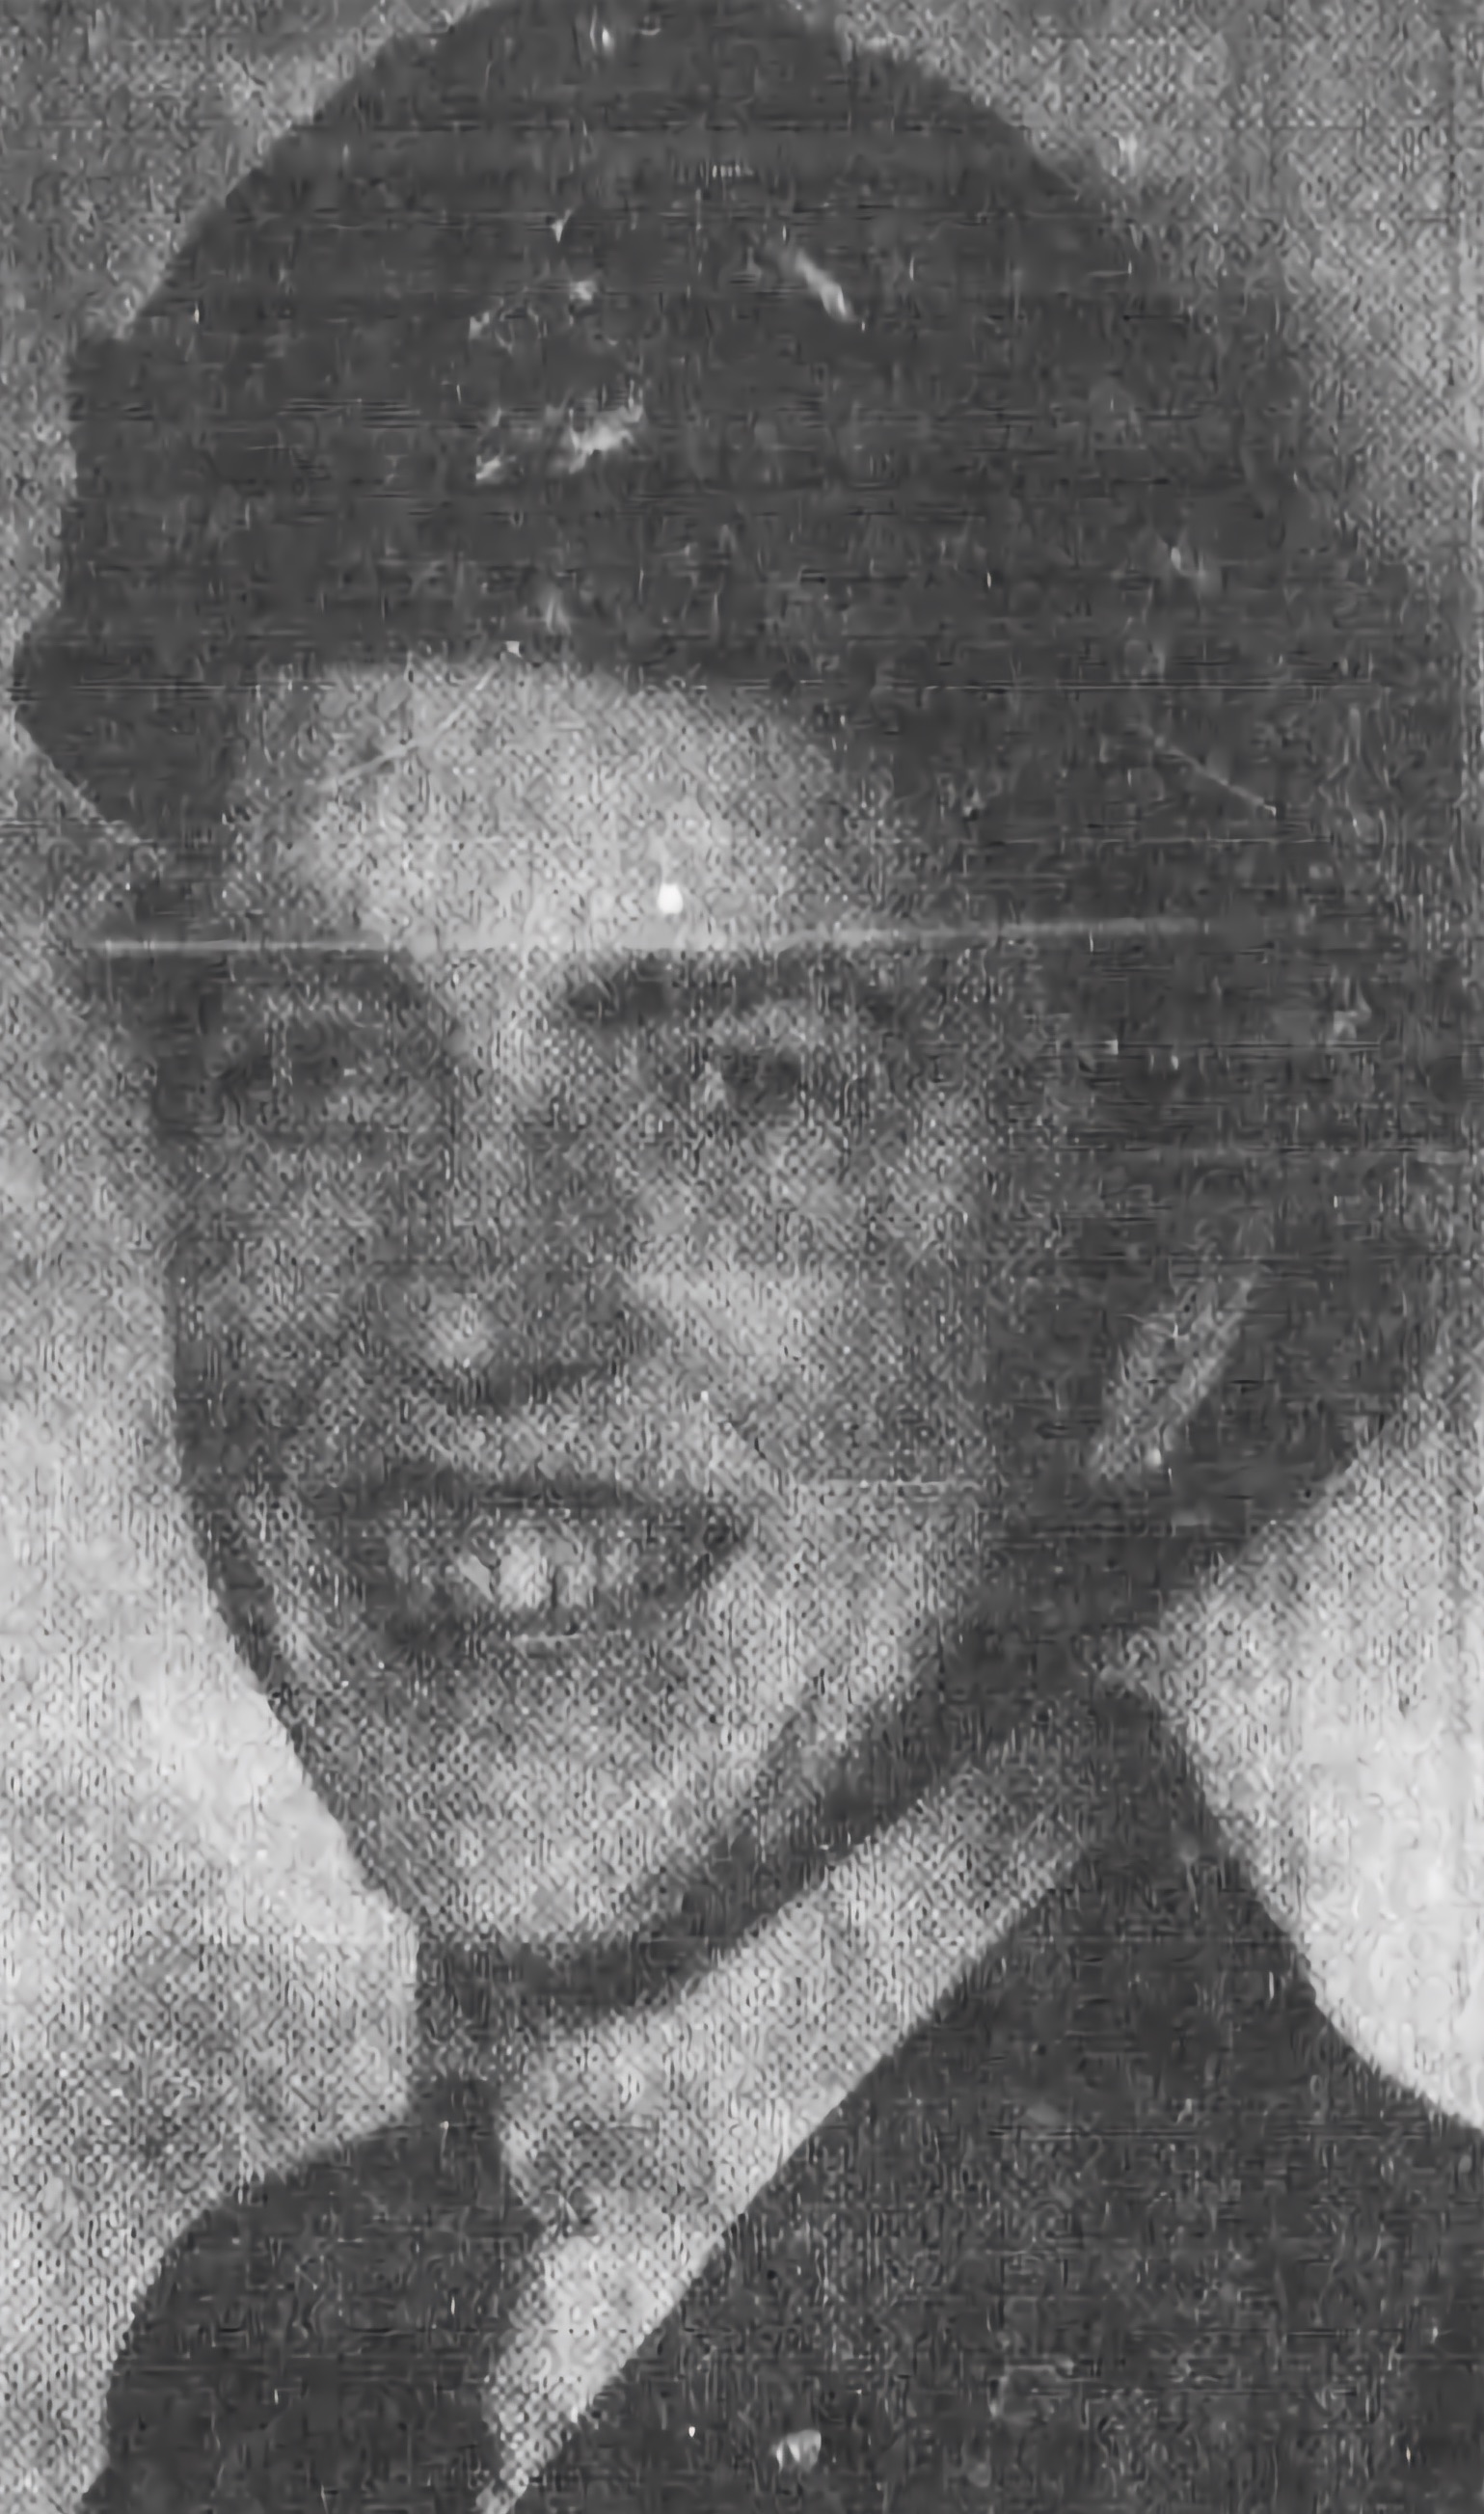 ACW1 Annelise Jørgensen in her uniform in 1943.